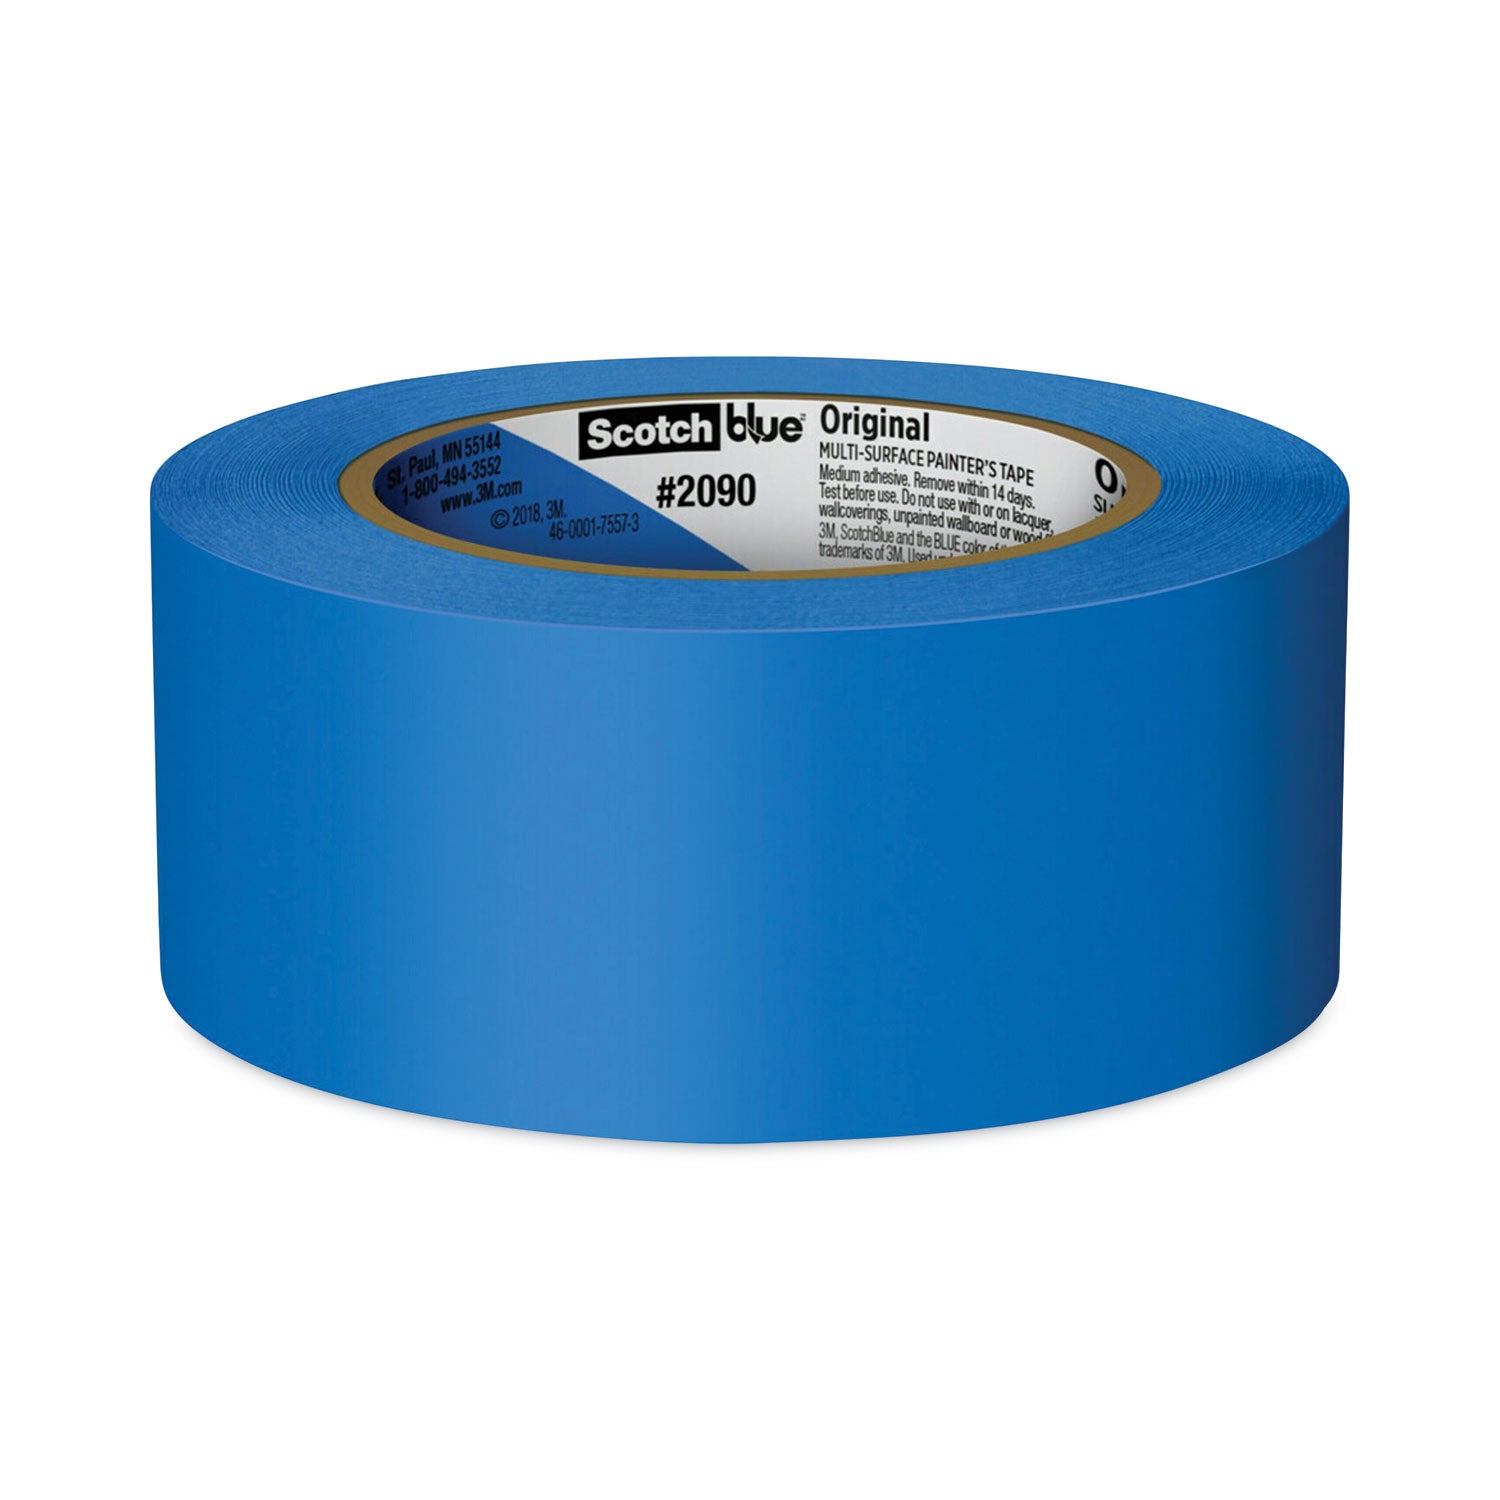 Original Multi-Surface Painter's Tape, 3" Core, 1.88" x 60 yds, Blue, 3/Pack - 